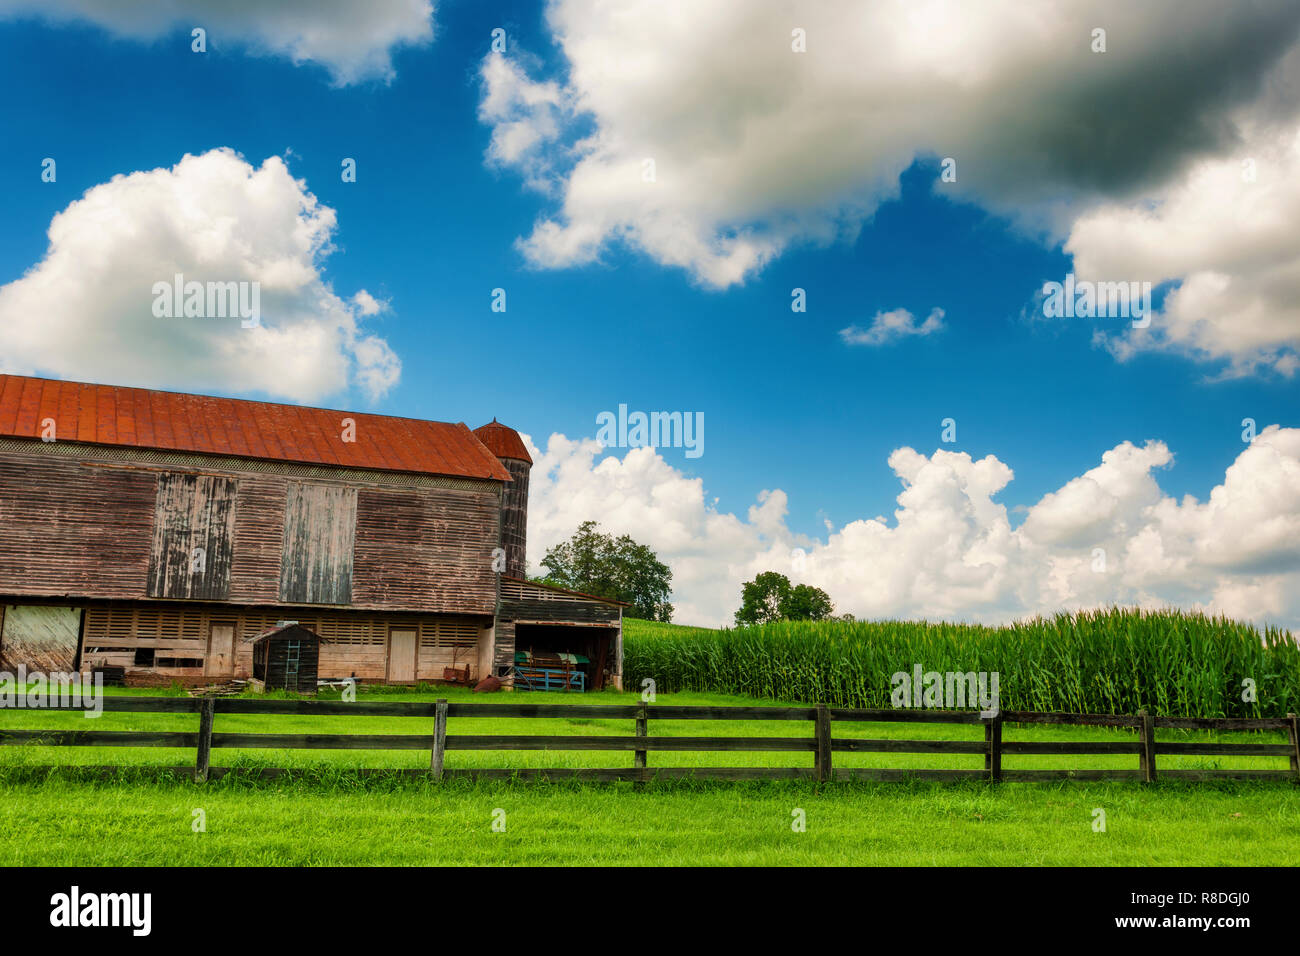 La Virginie de l'Ouest rural scène pays avec grange, pâturages et champs de maïs sous ciel nuageux. Banque D'Images